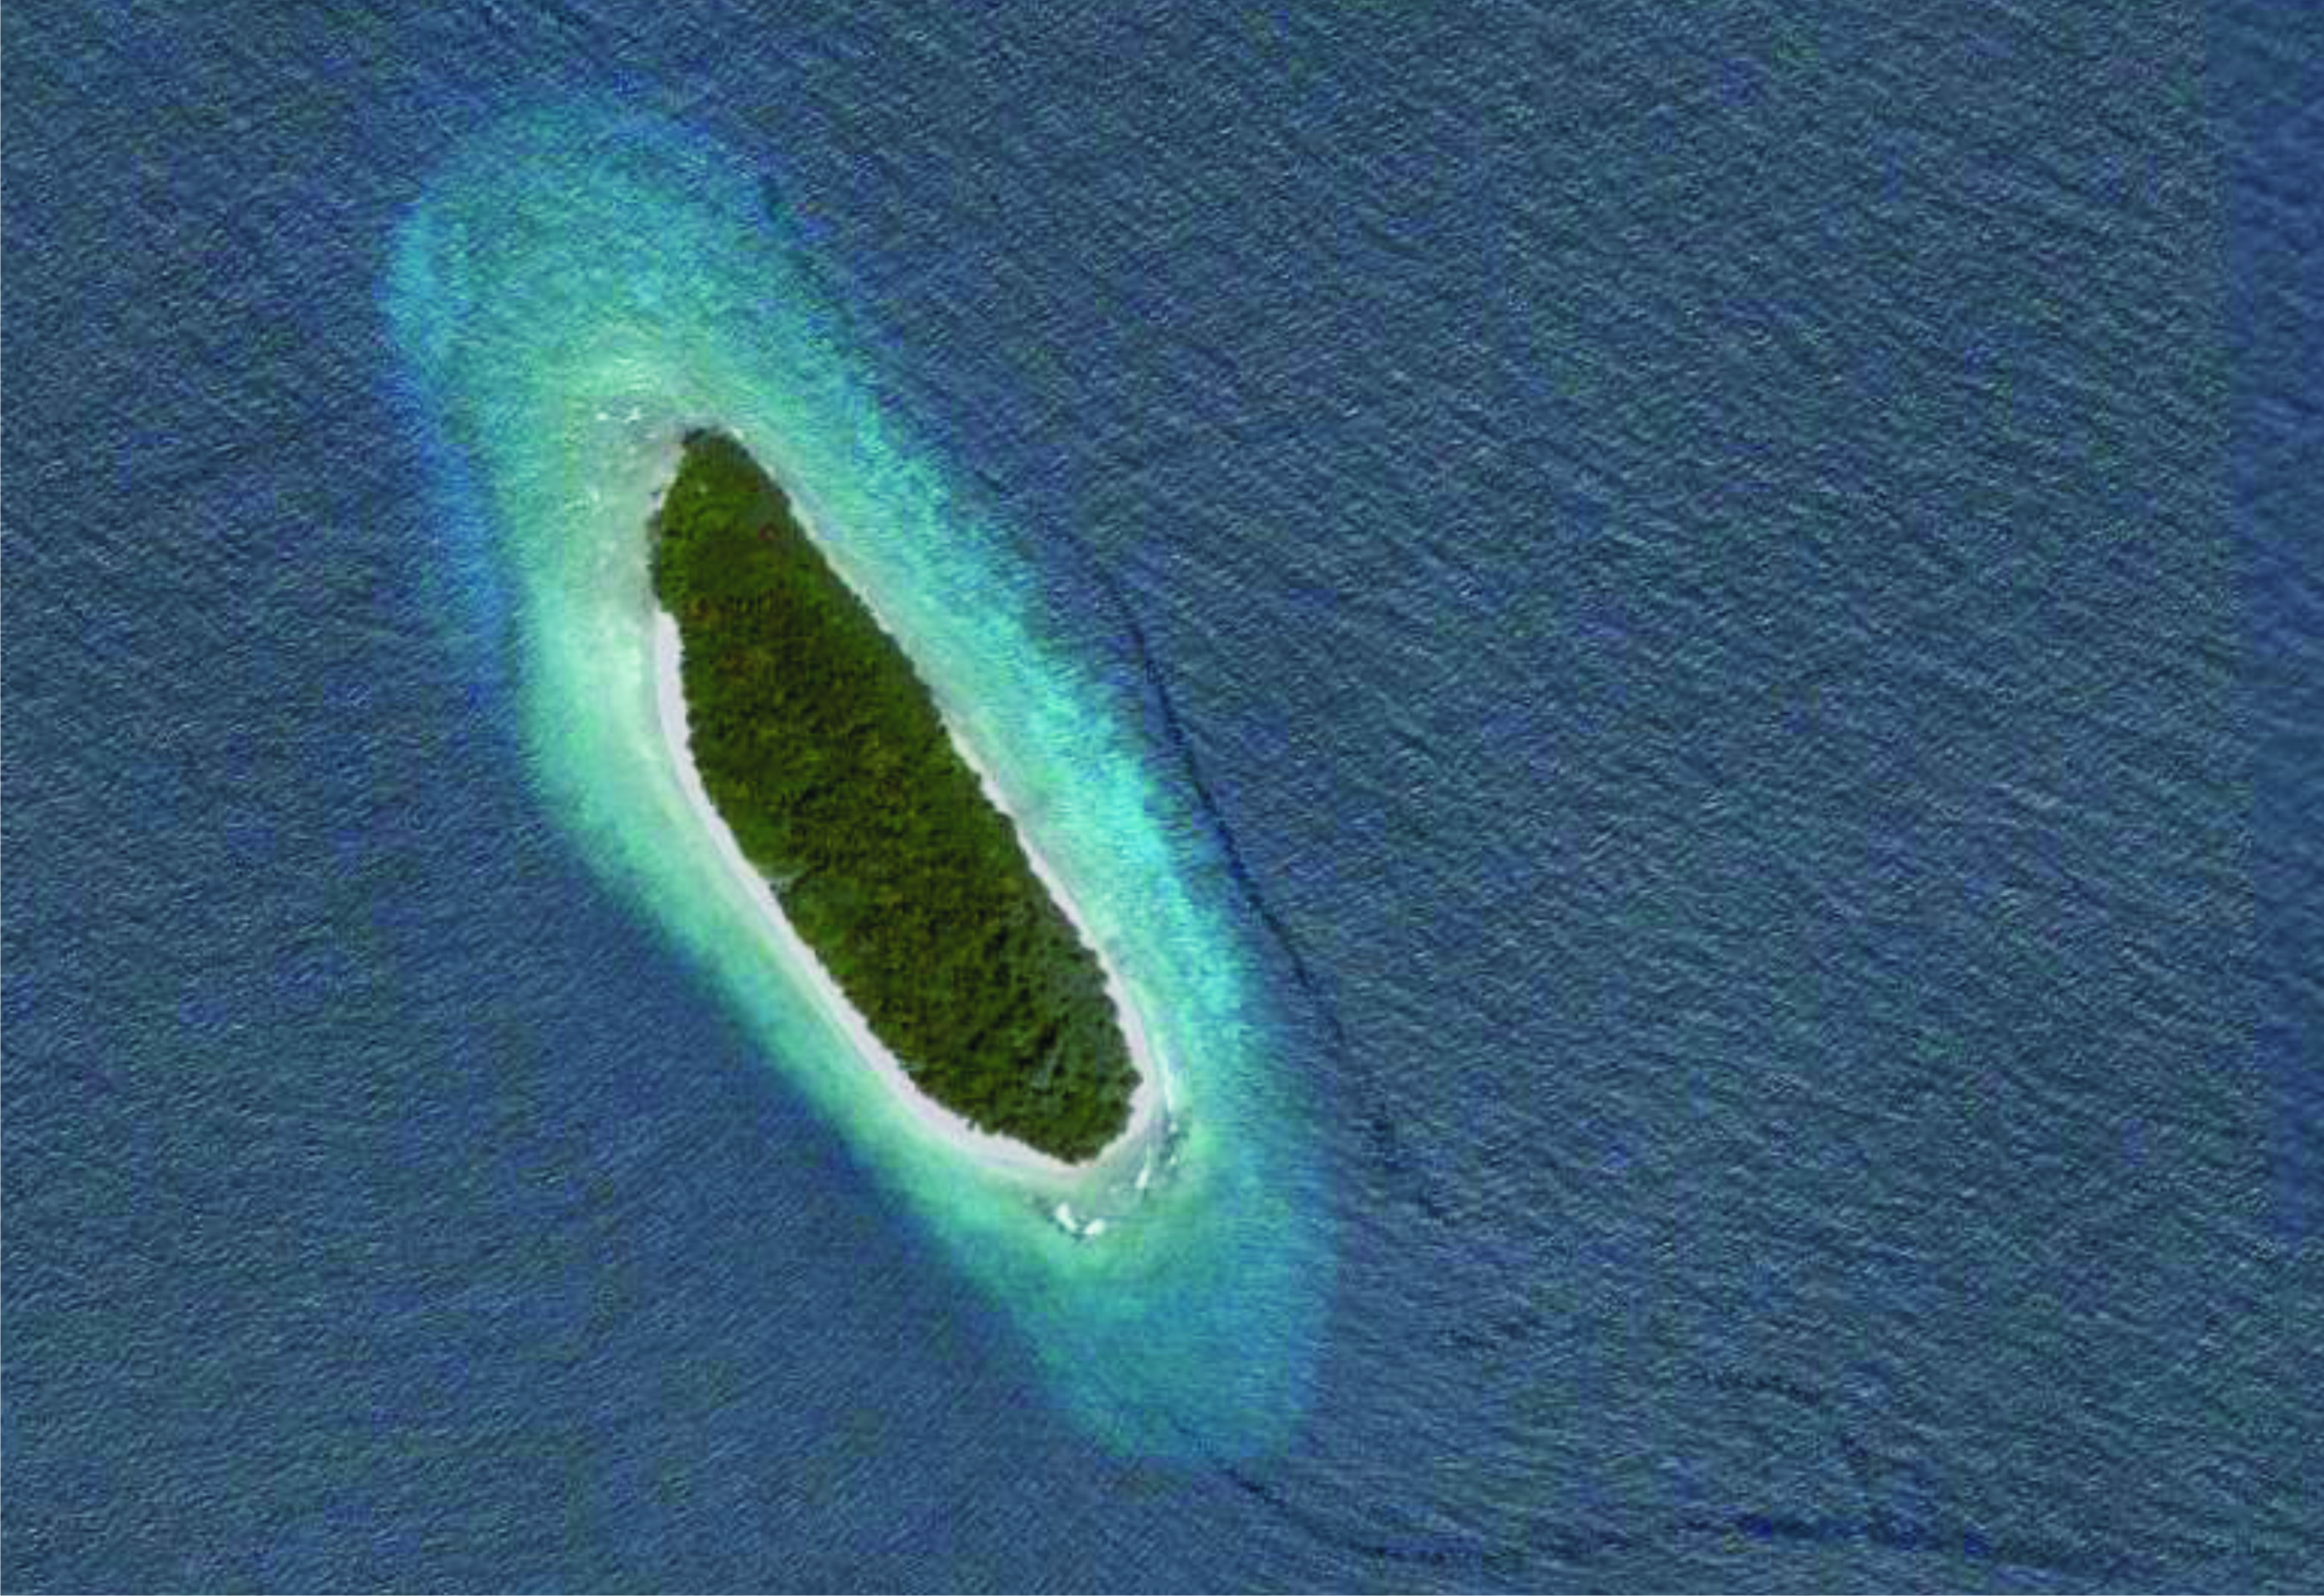 Thiladhunmathi Uthuruburi (Haa Alifu Atoll)